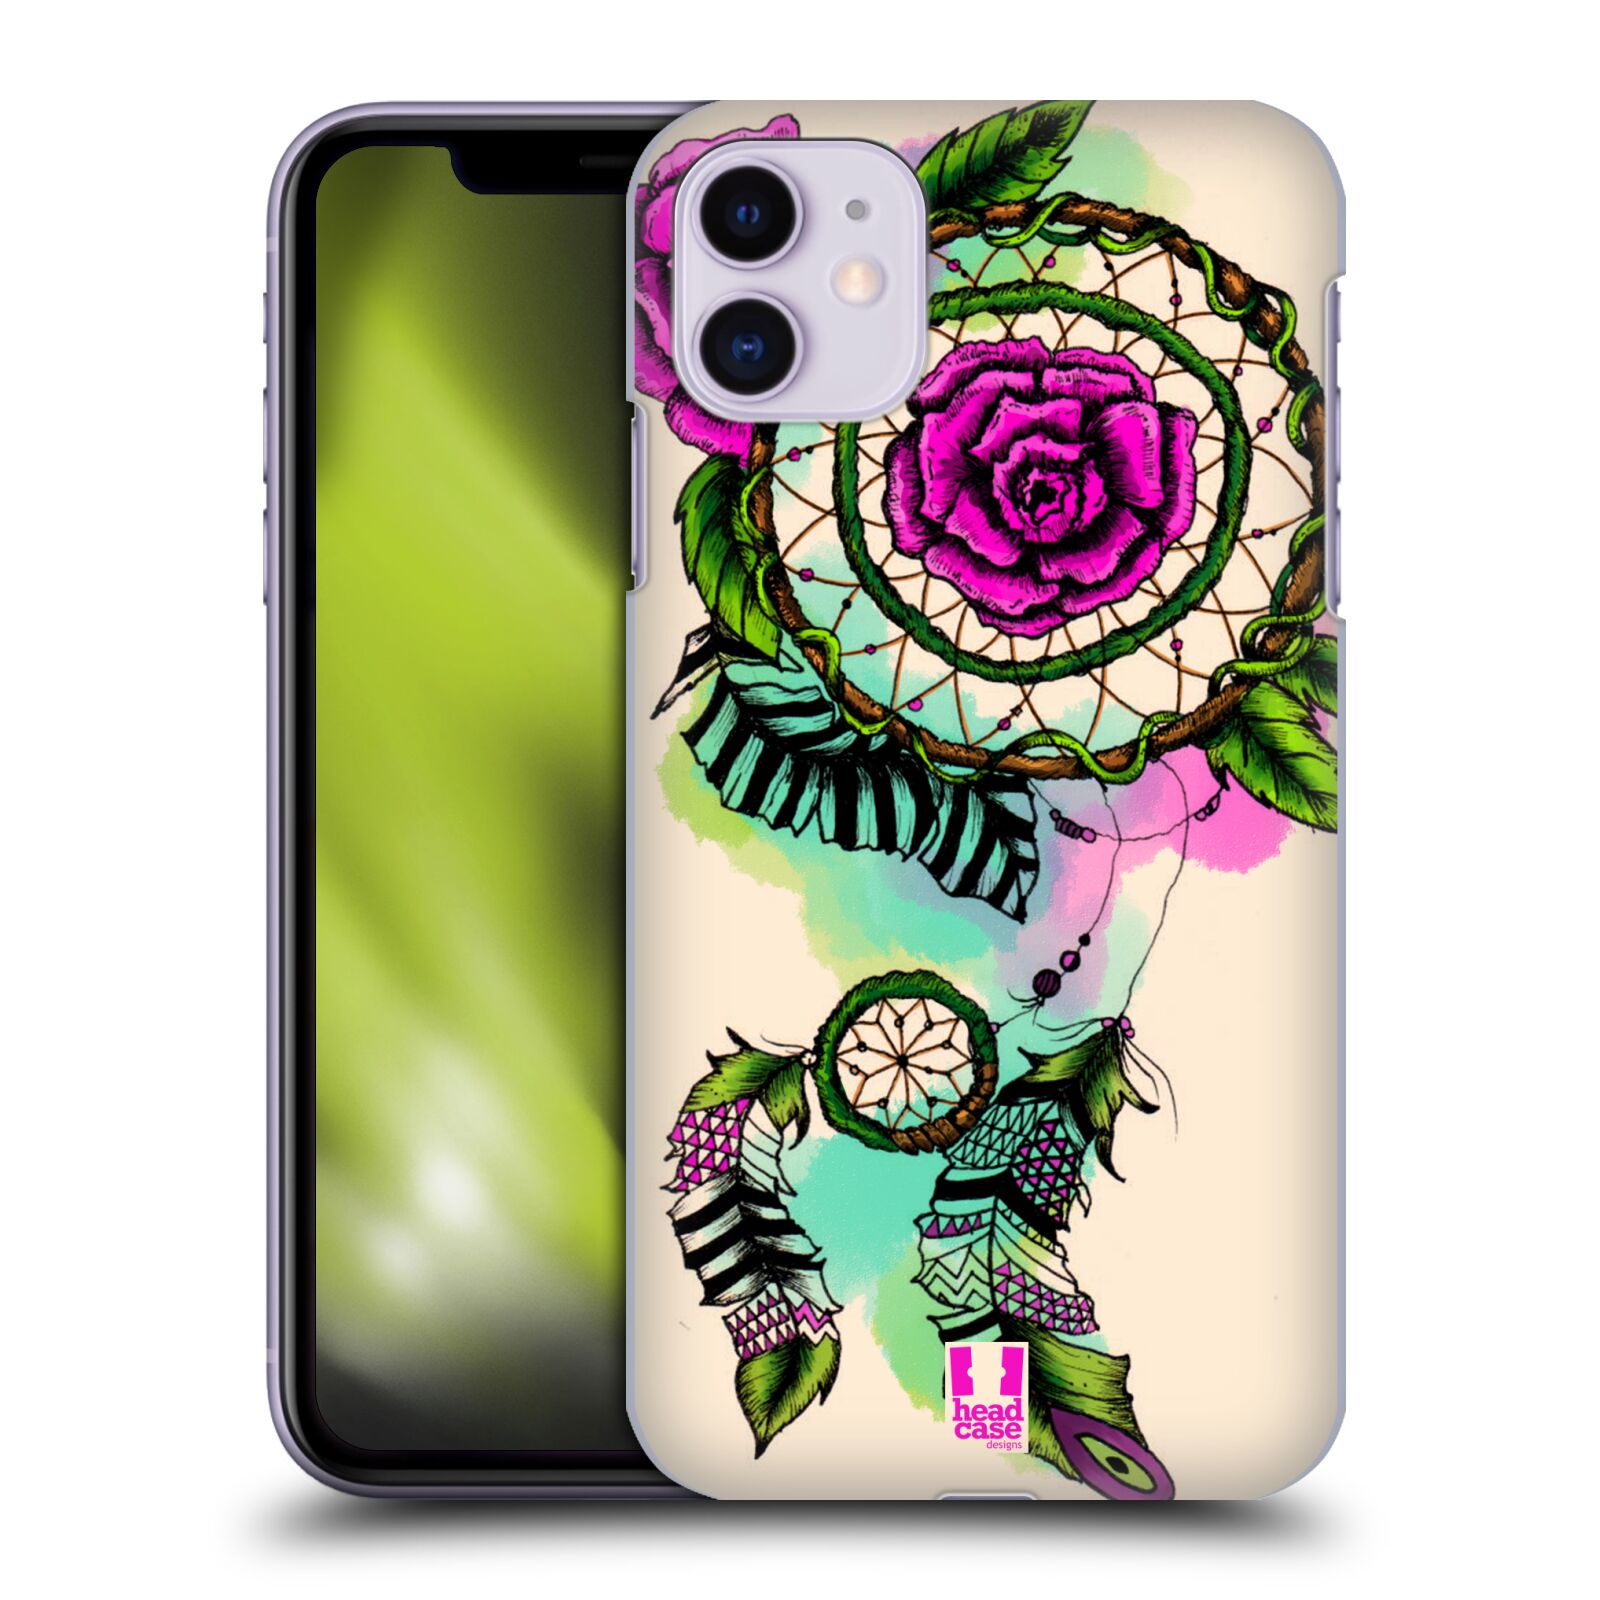 Pouzdro na mobil Apple Iphone 11 - HEAD CASE - vzor Květy lapač snů růže